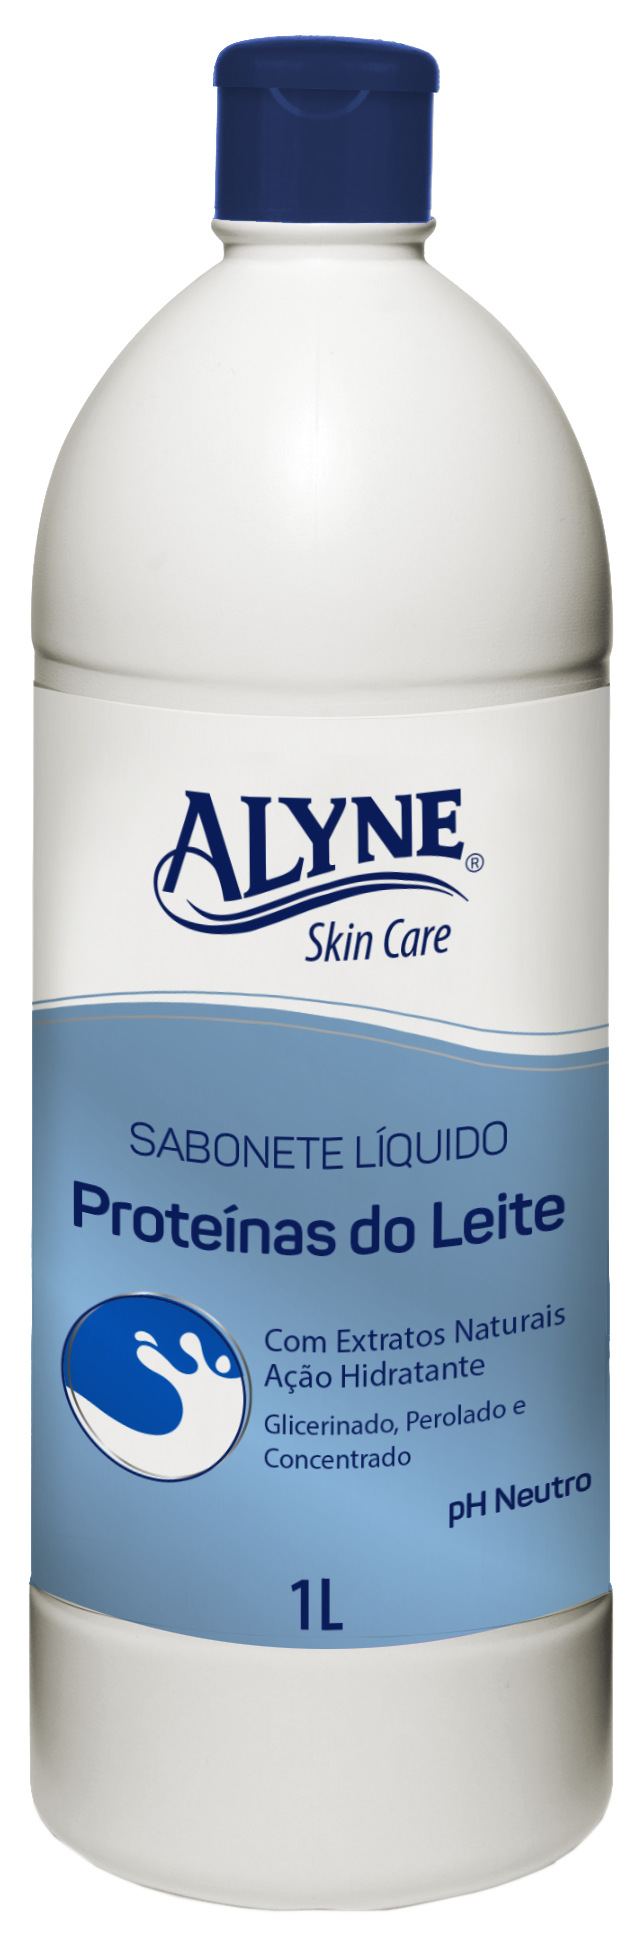 Sabonete Líquido Alyne Skin Care Proteínas do Leite 1L